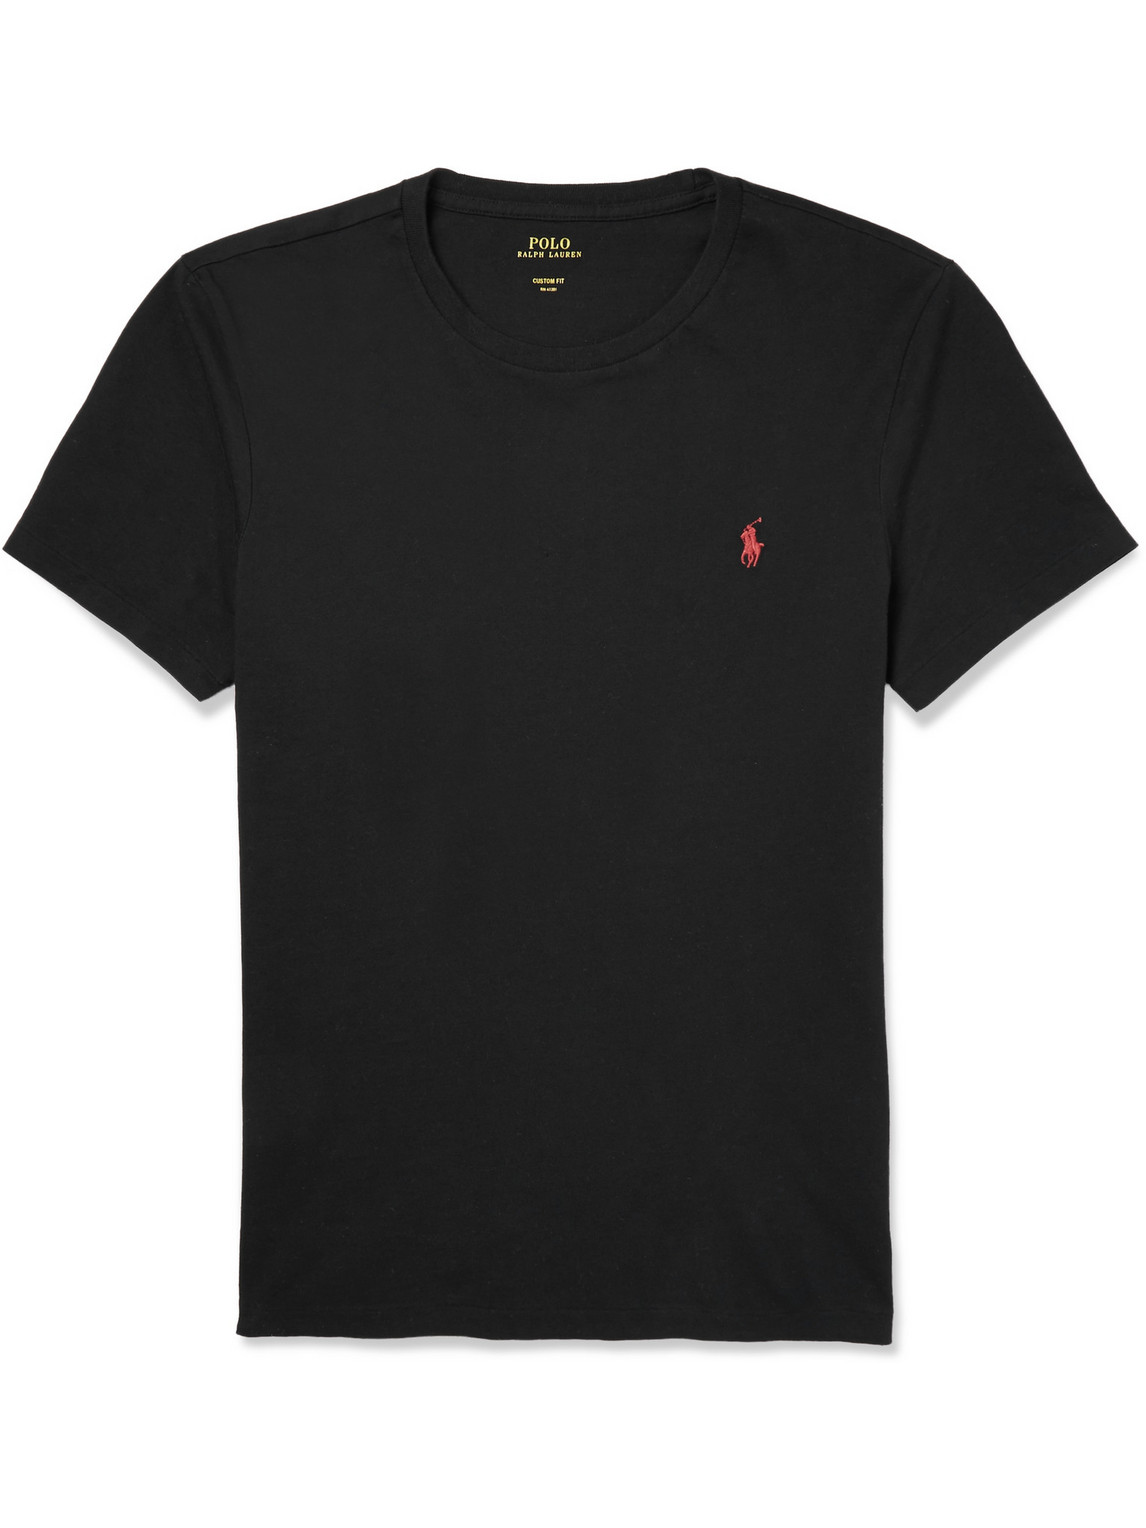 Polo Ralph Lauren - Slim-Fit Cotton T-Shirt - Men - Black - XXL於男裝